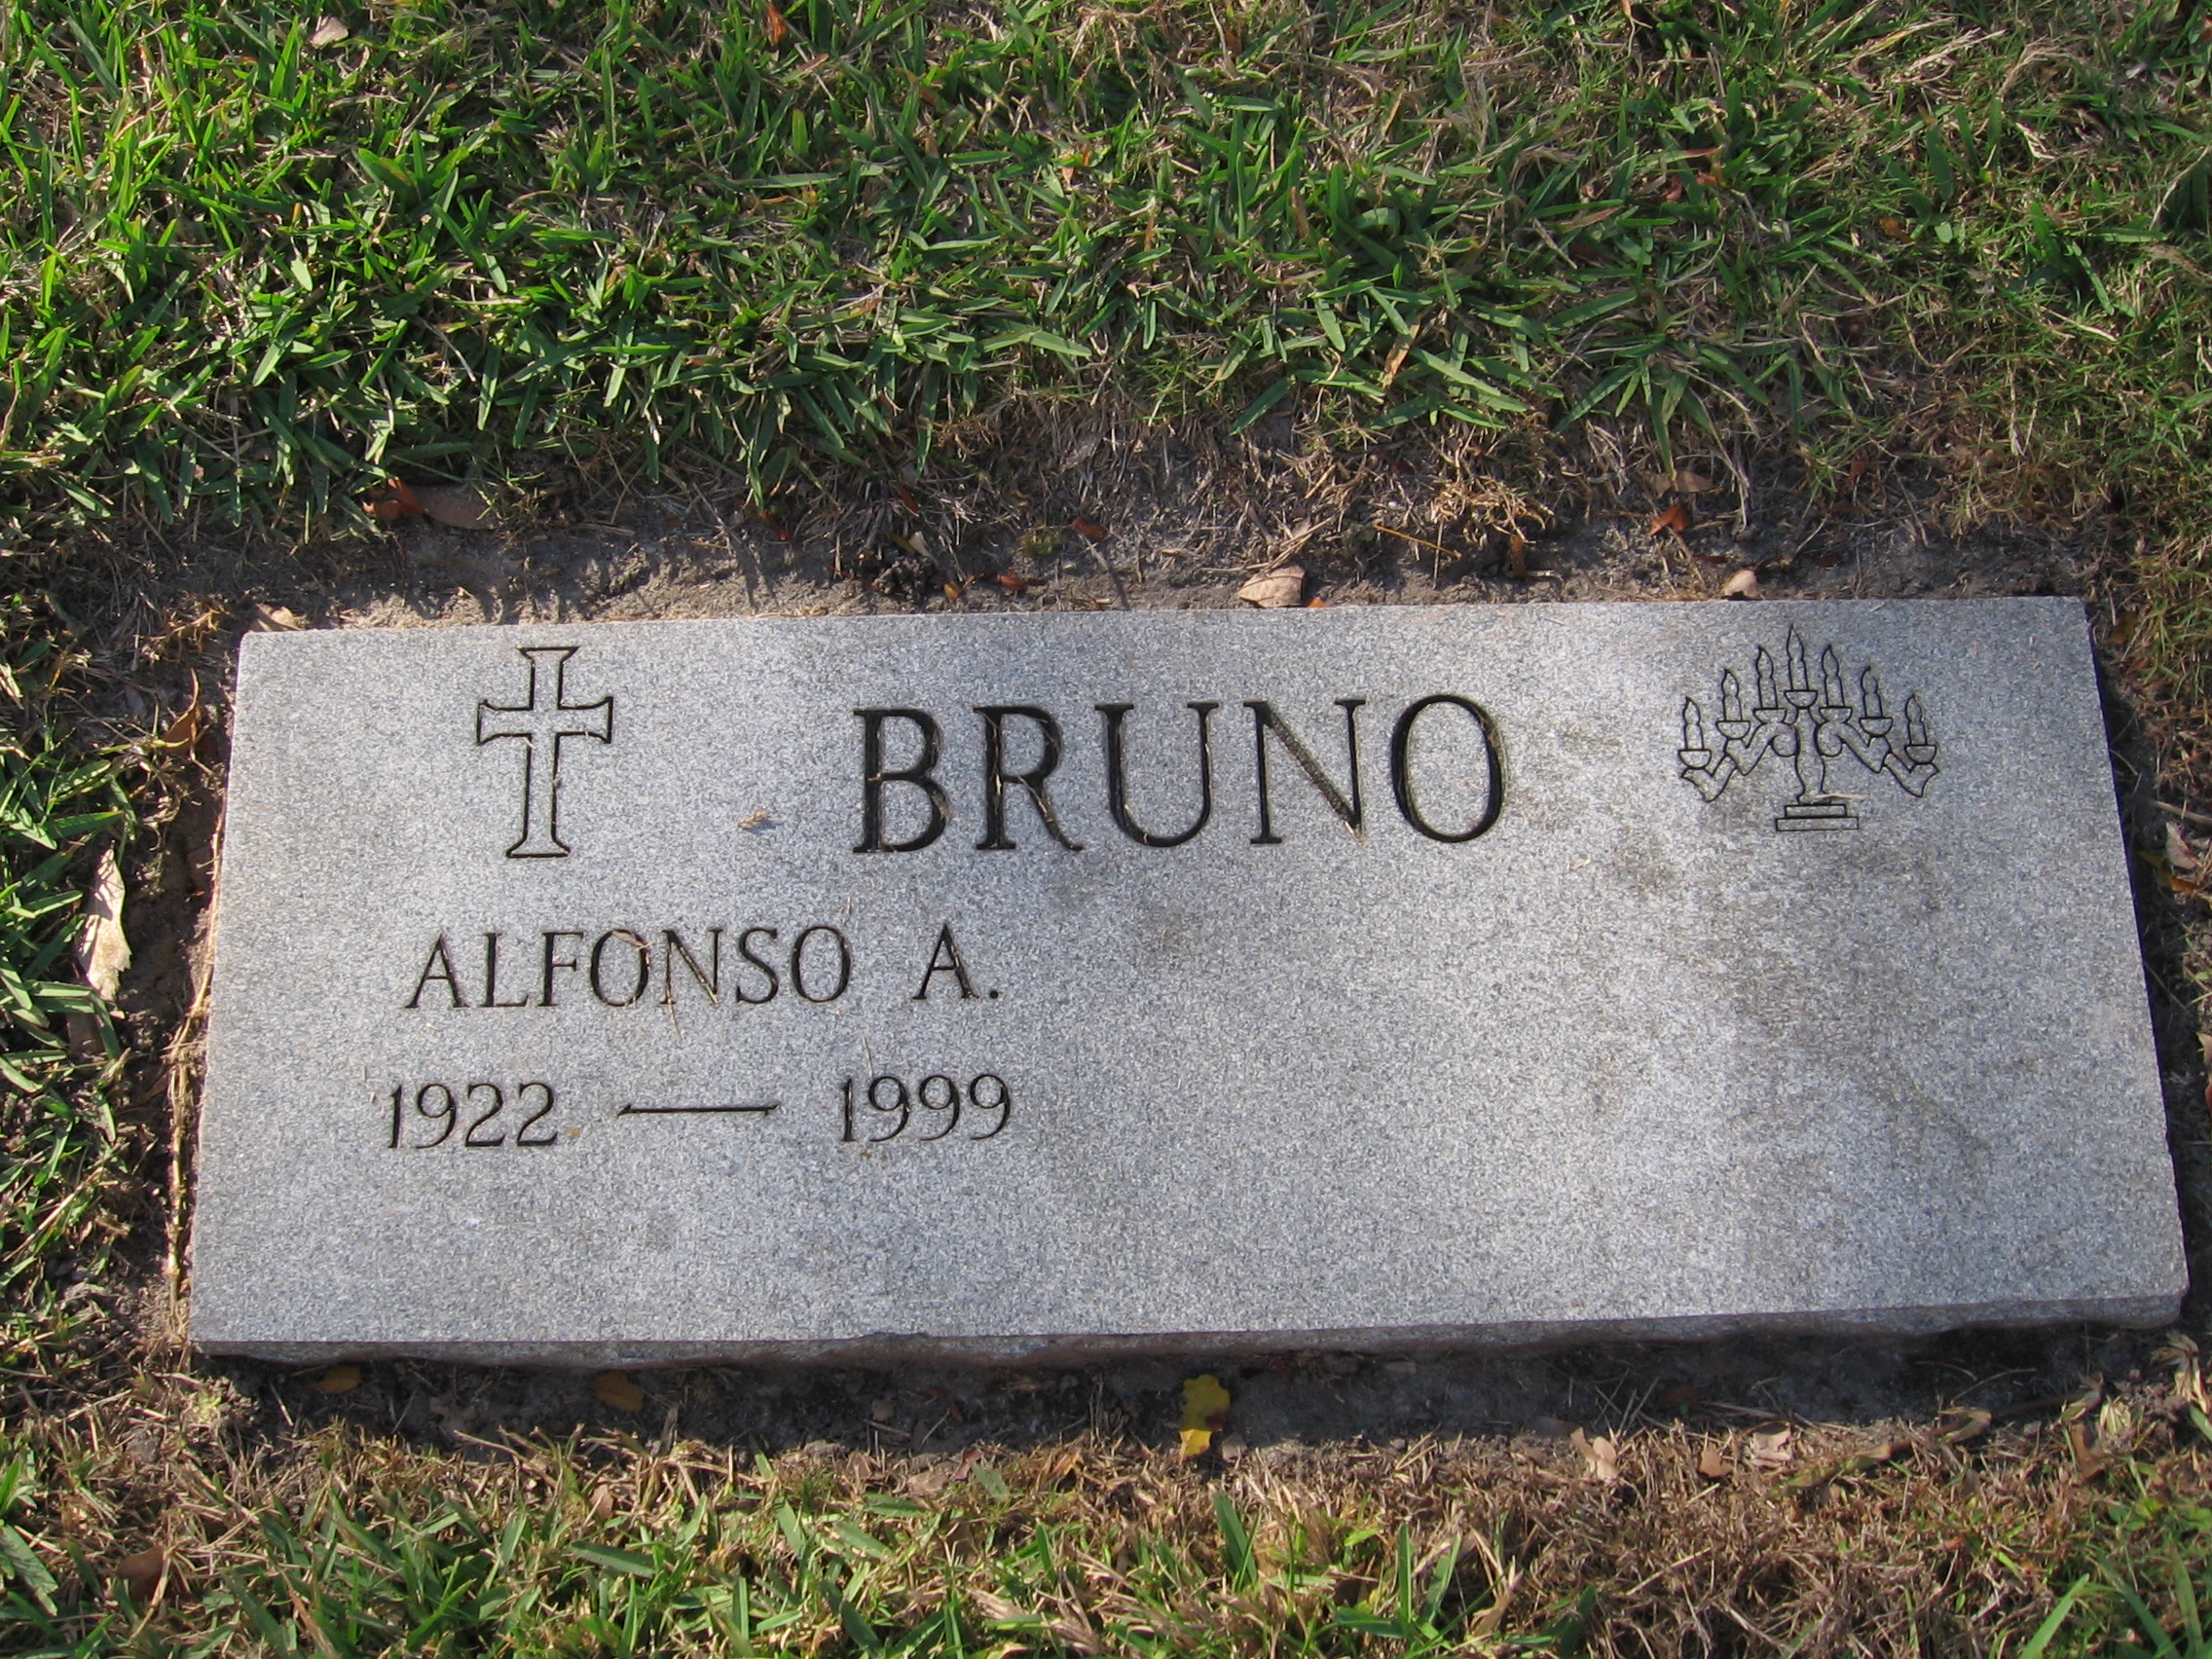 Alfonso A Bruno